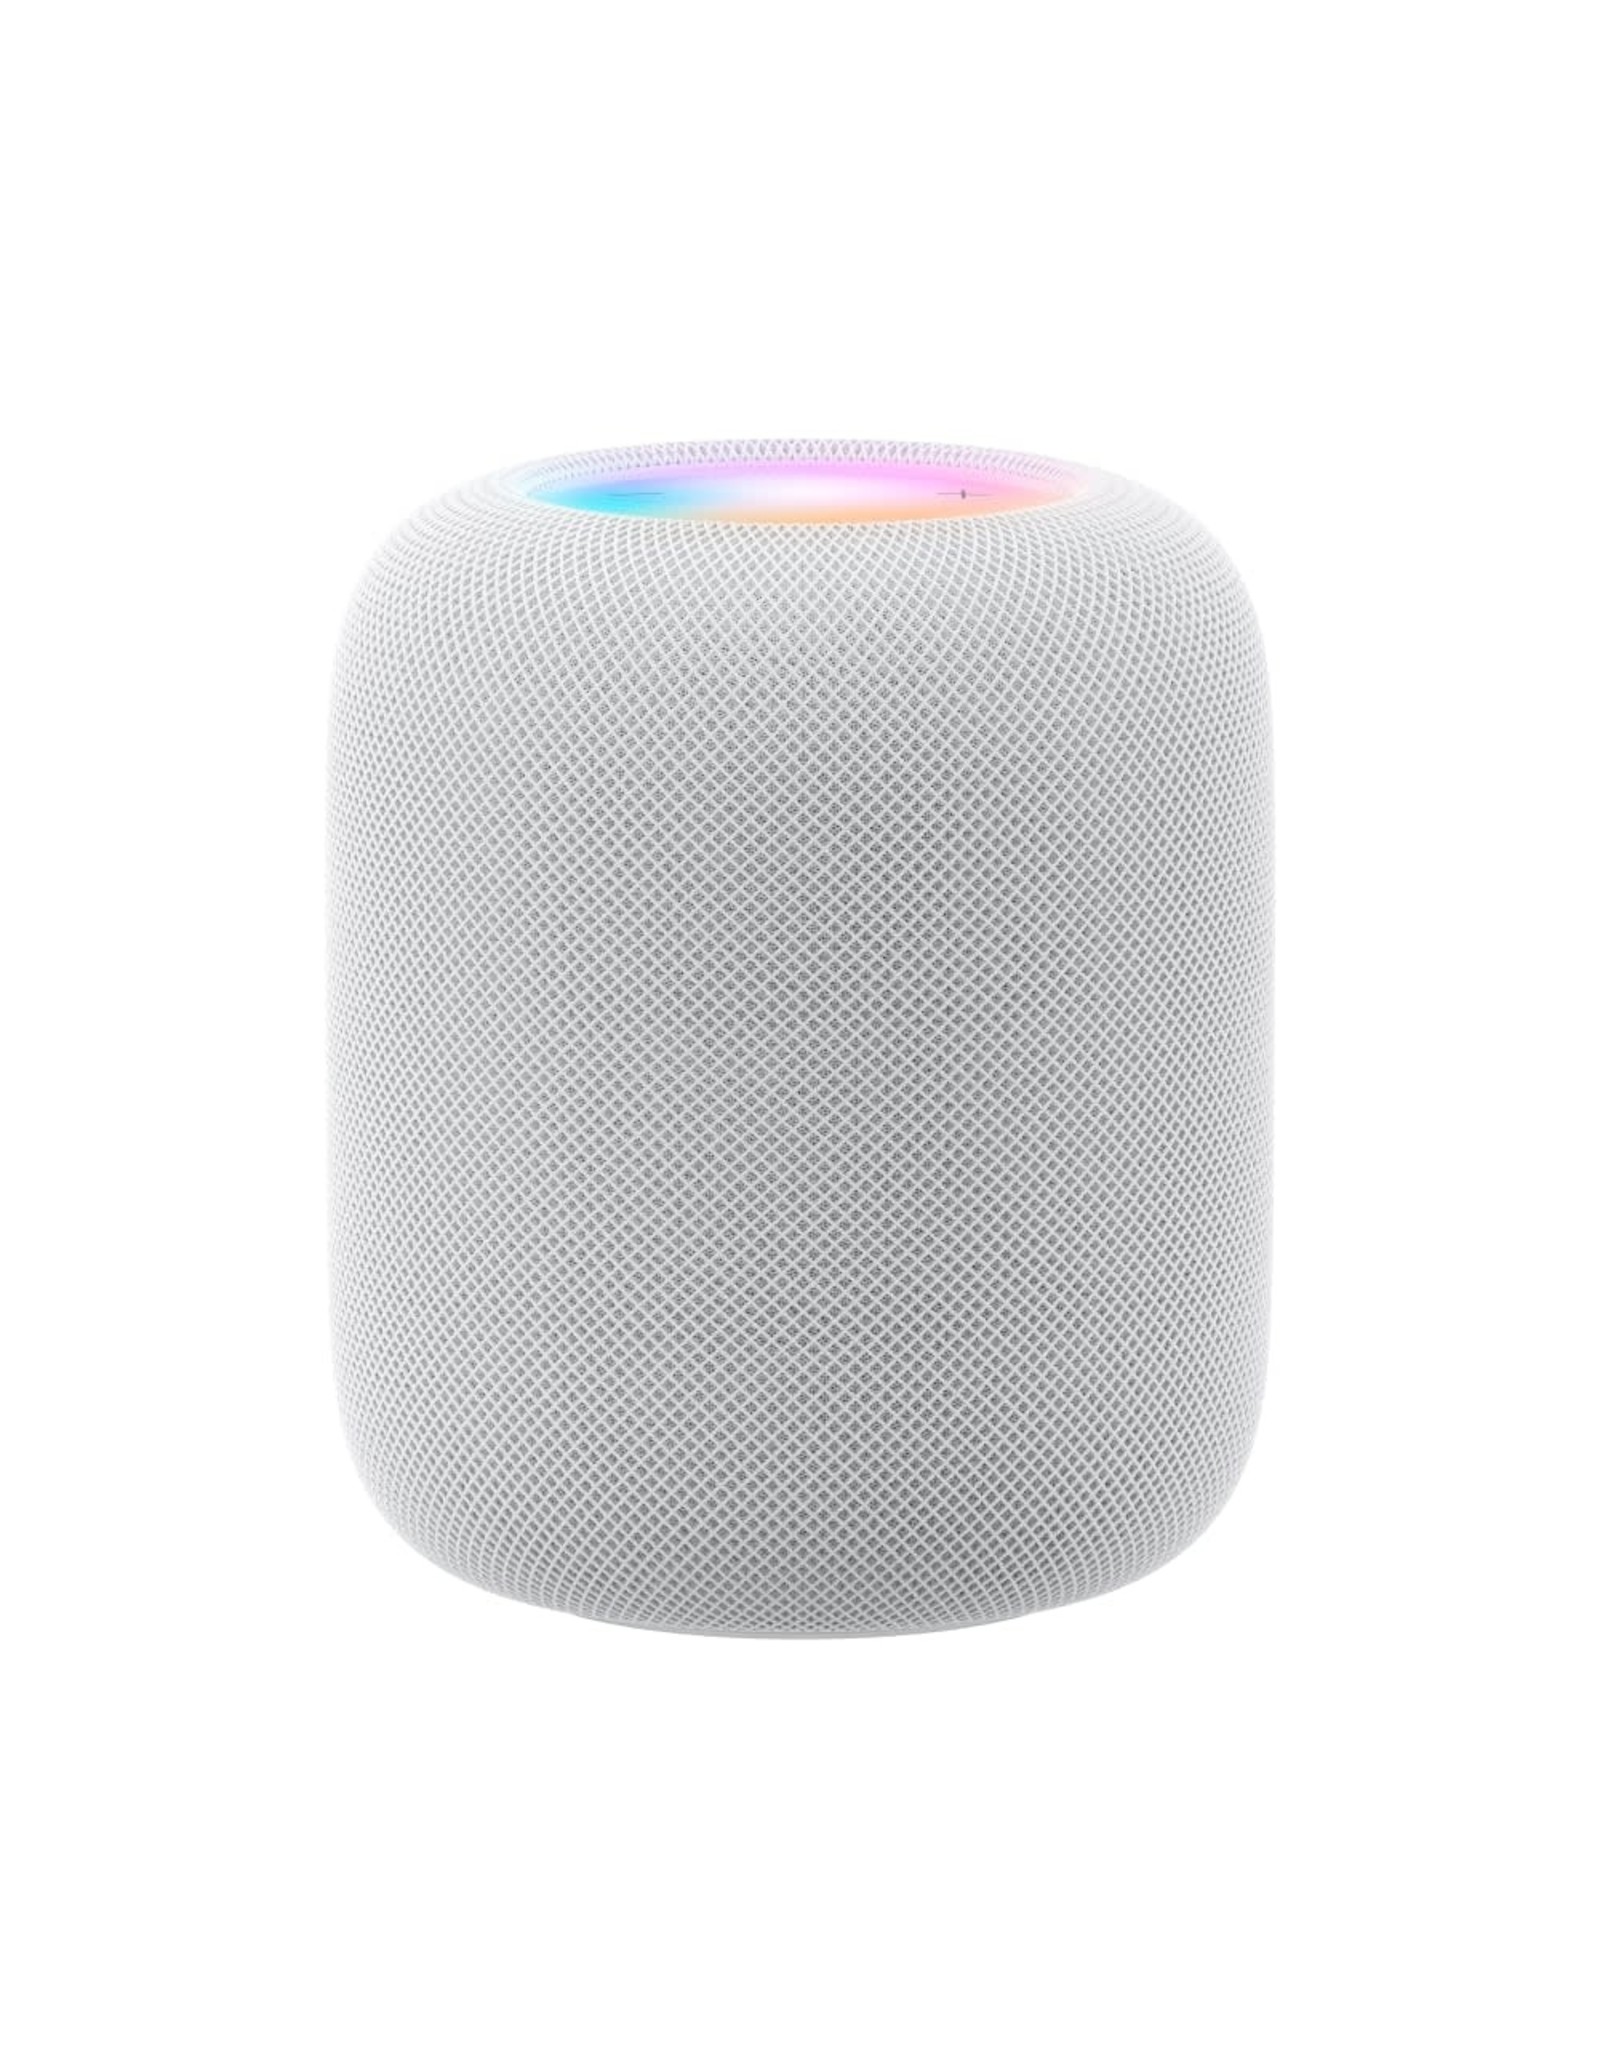 Apple Apple HomePod - White